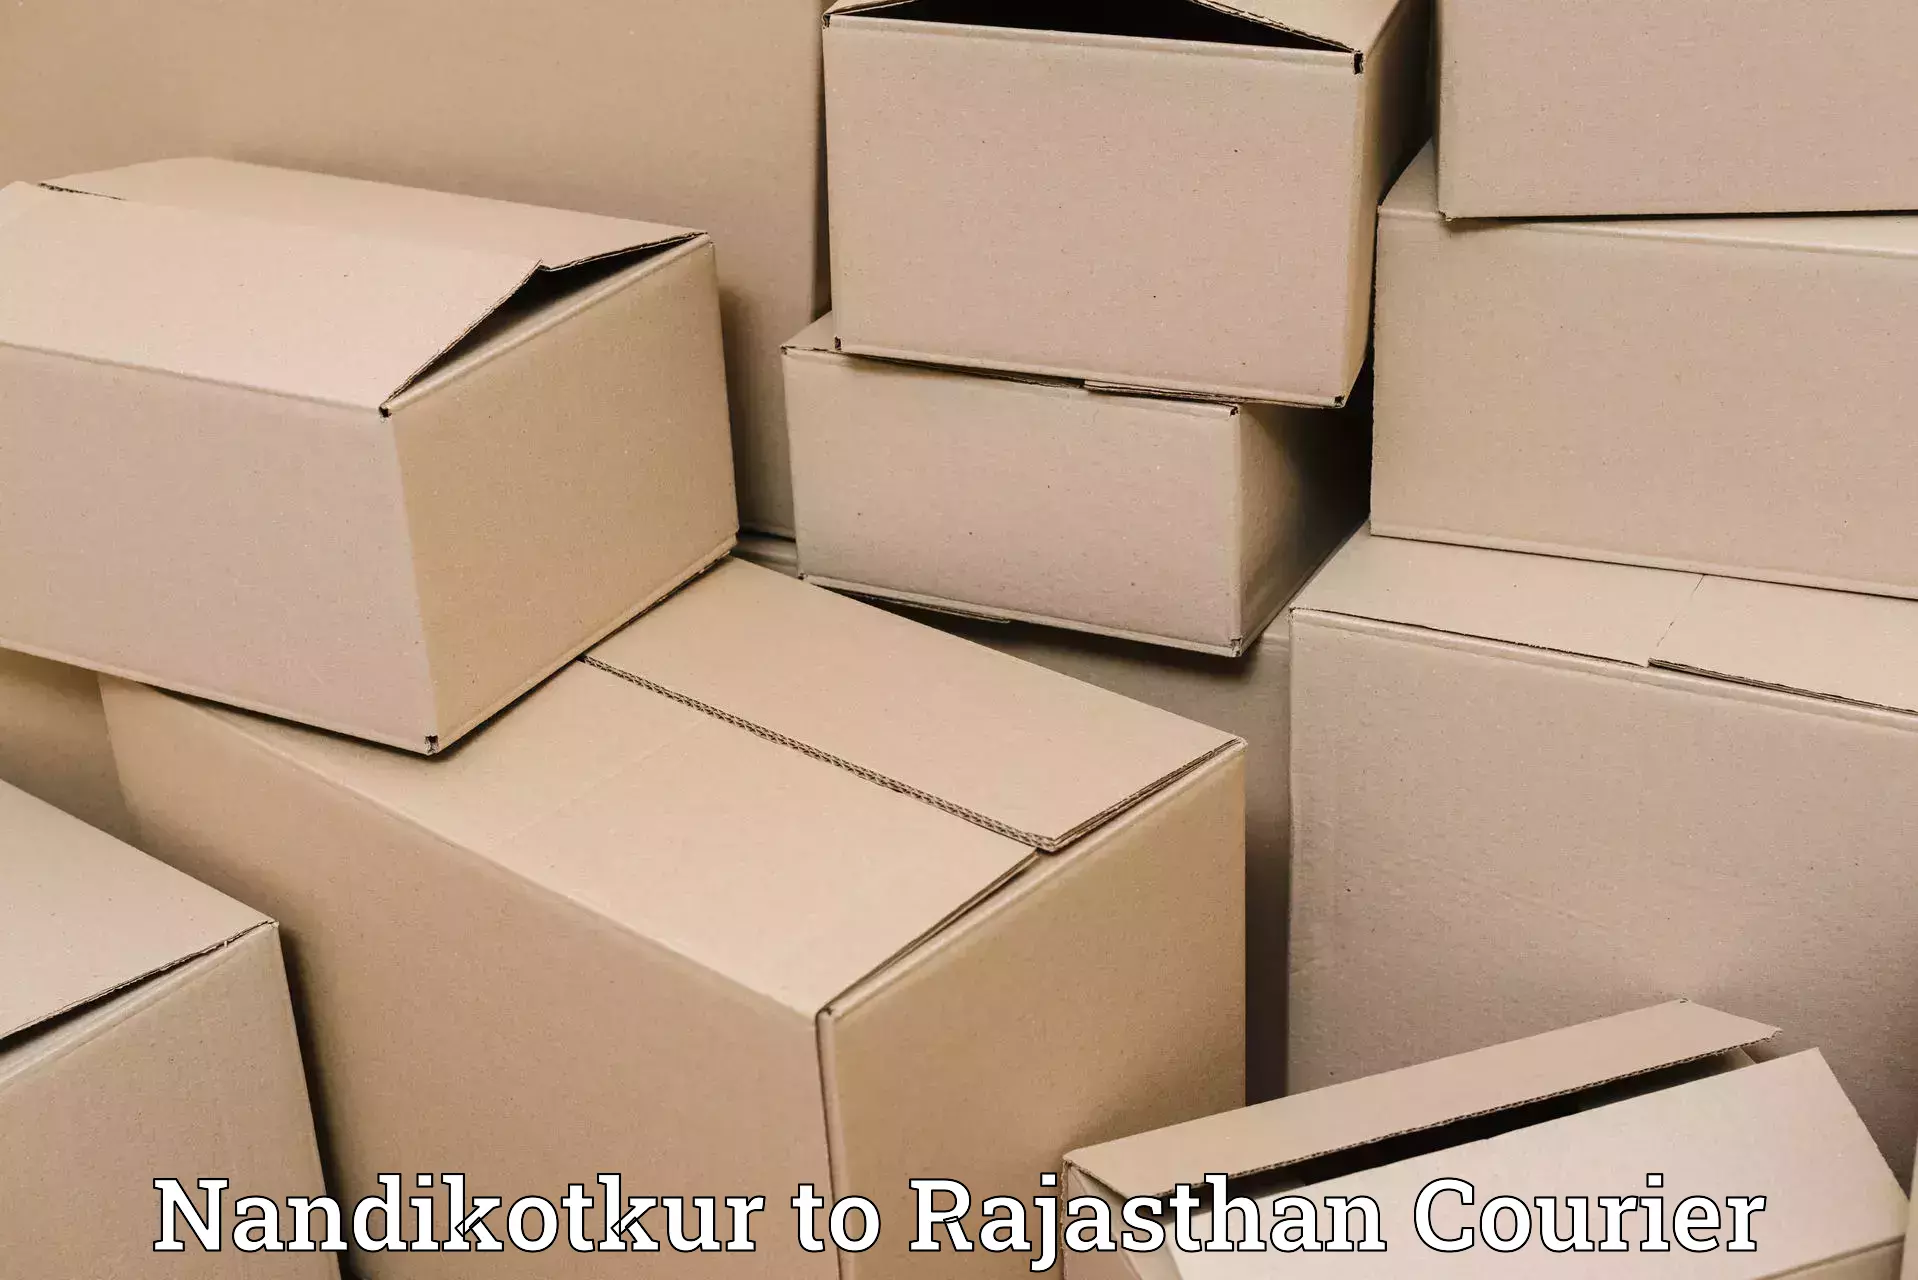 Online shipping calculator Nandikotkur to Rajasthan